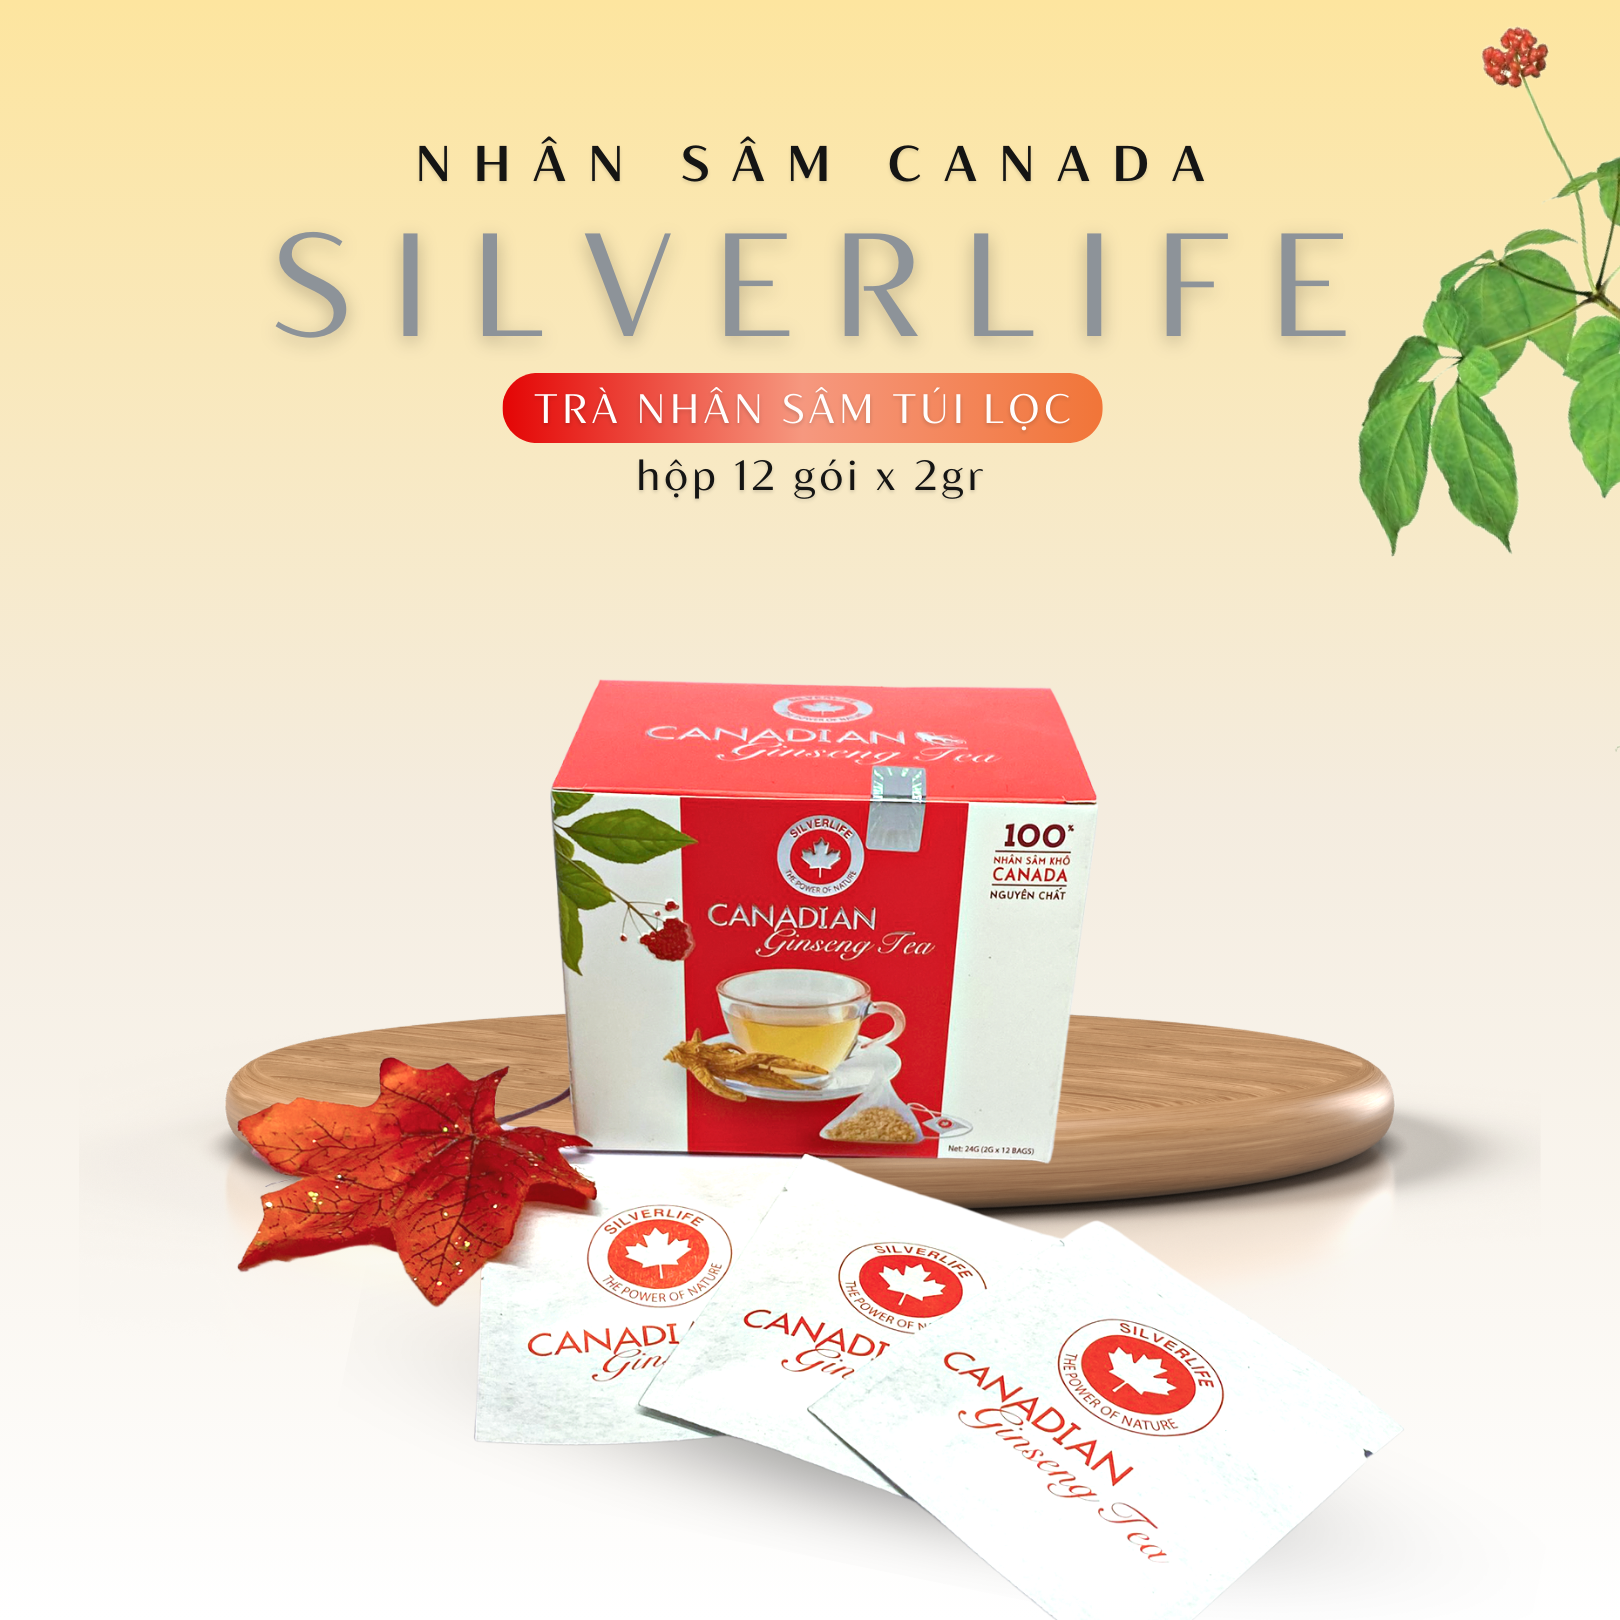 Trà nhân sâm Canada SilverLife hộp 12 gói 24g - 100% nhân sâm Canada tự nhiên nguyên chất - Giúp giải nhiệt, tăng cường sức khoẻ